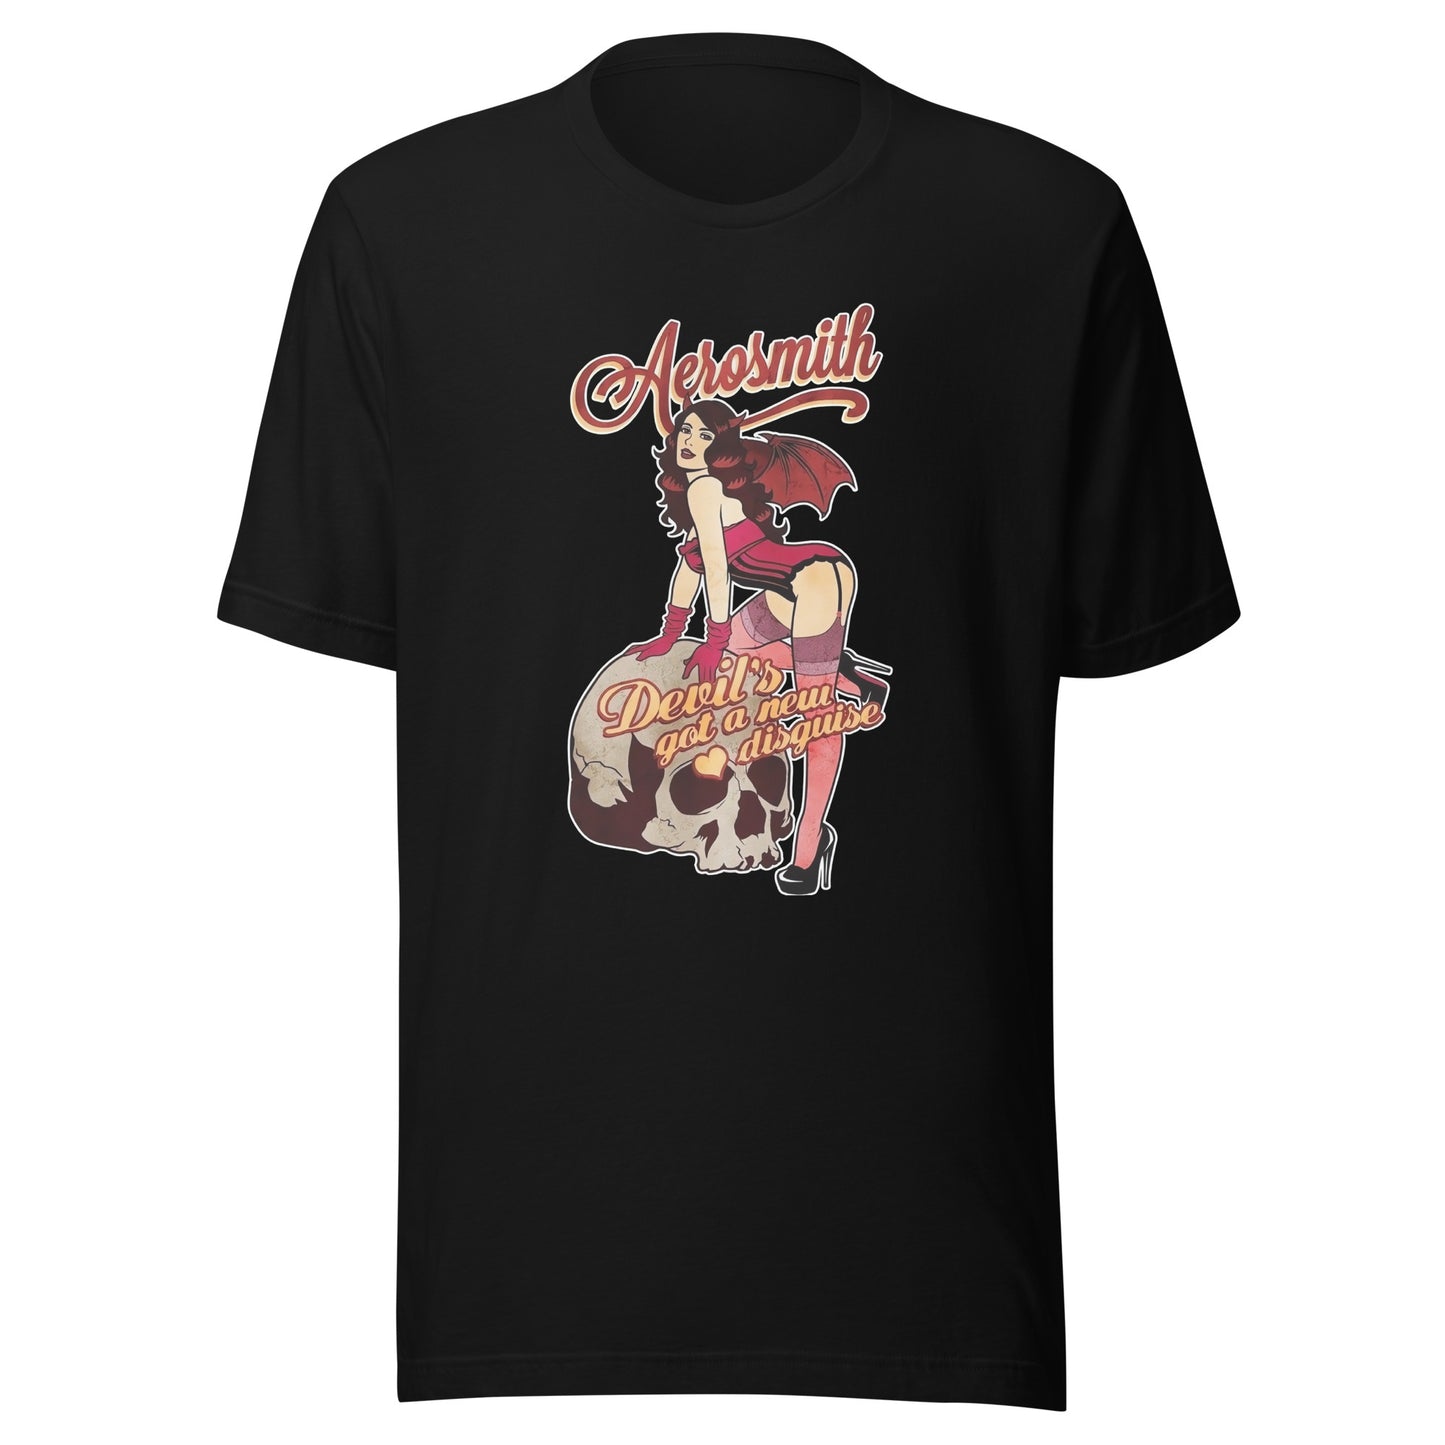 ¡Compra el mejor merchandising en Superstar! Encuentra diseños únicos y de alta calidad en camisetas únicas, Camiseta Aerosmith Devil